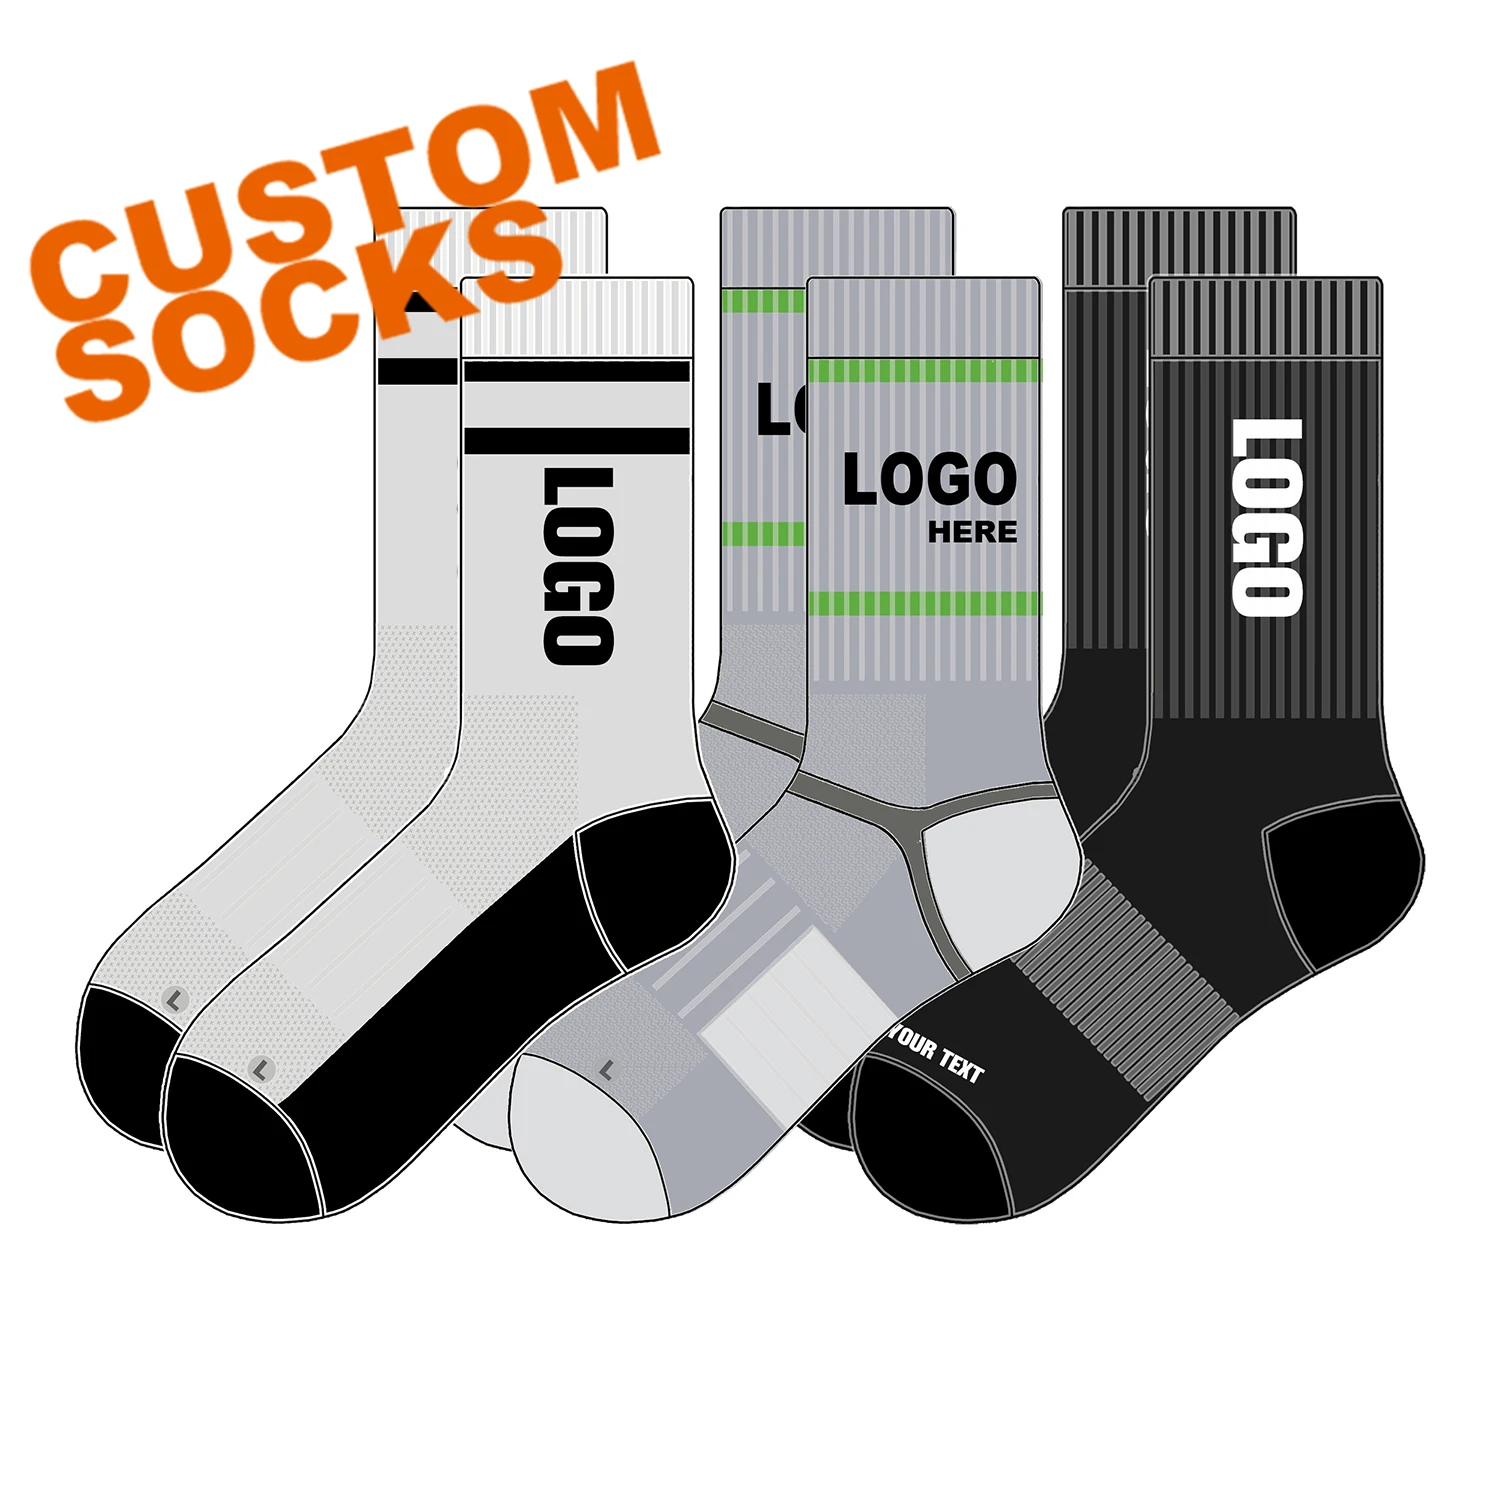 

RAYLON socken meias design your own crew white black basketball sport socks customized socks custom logo socks elite